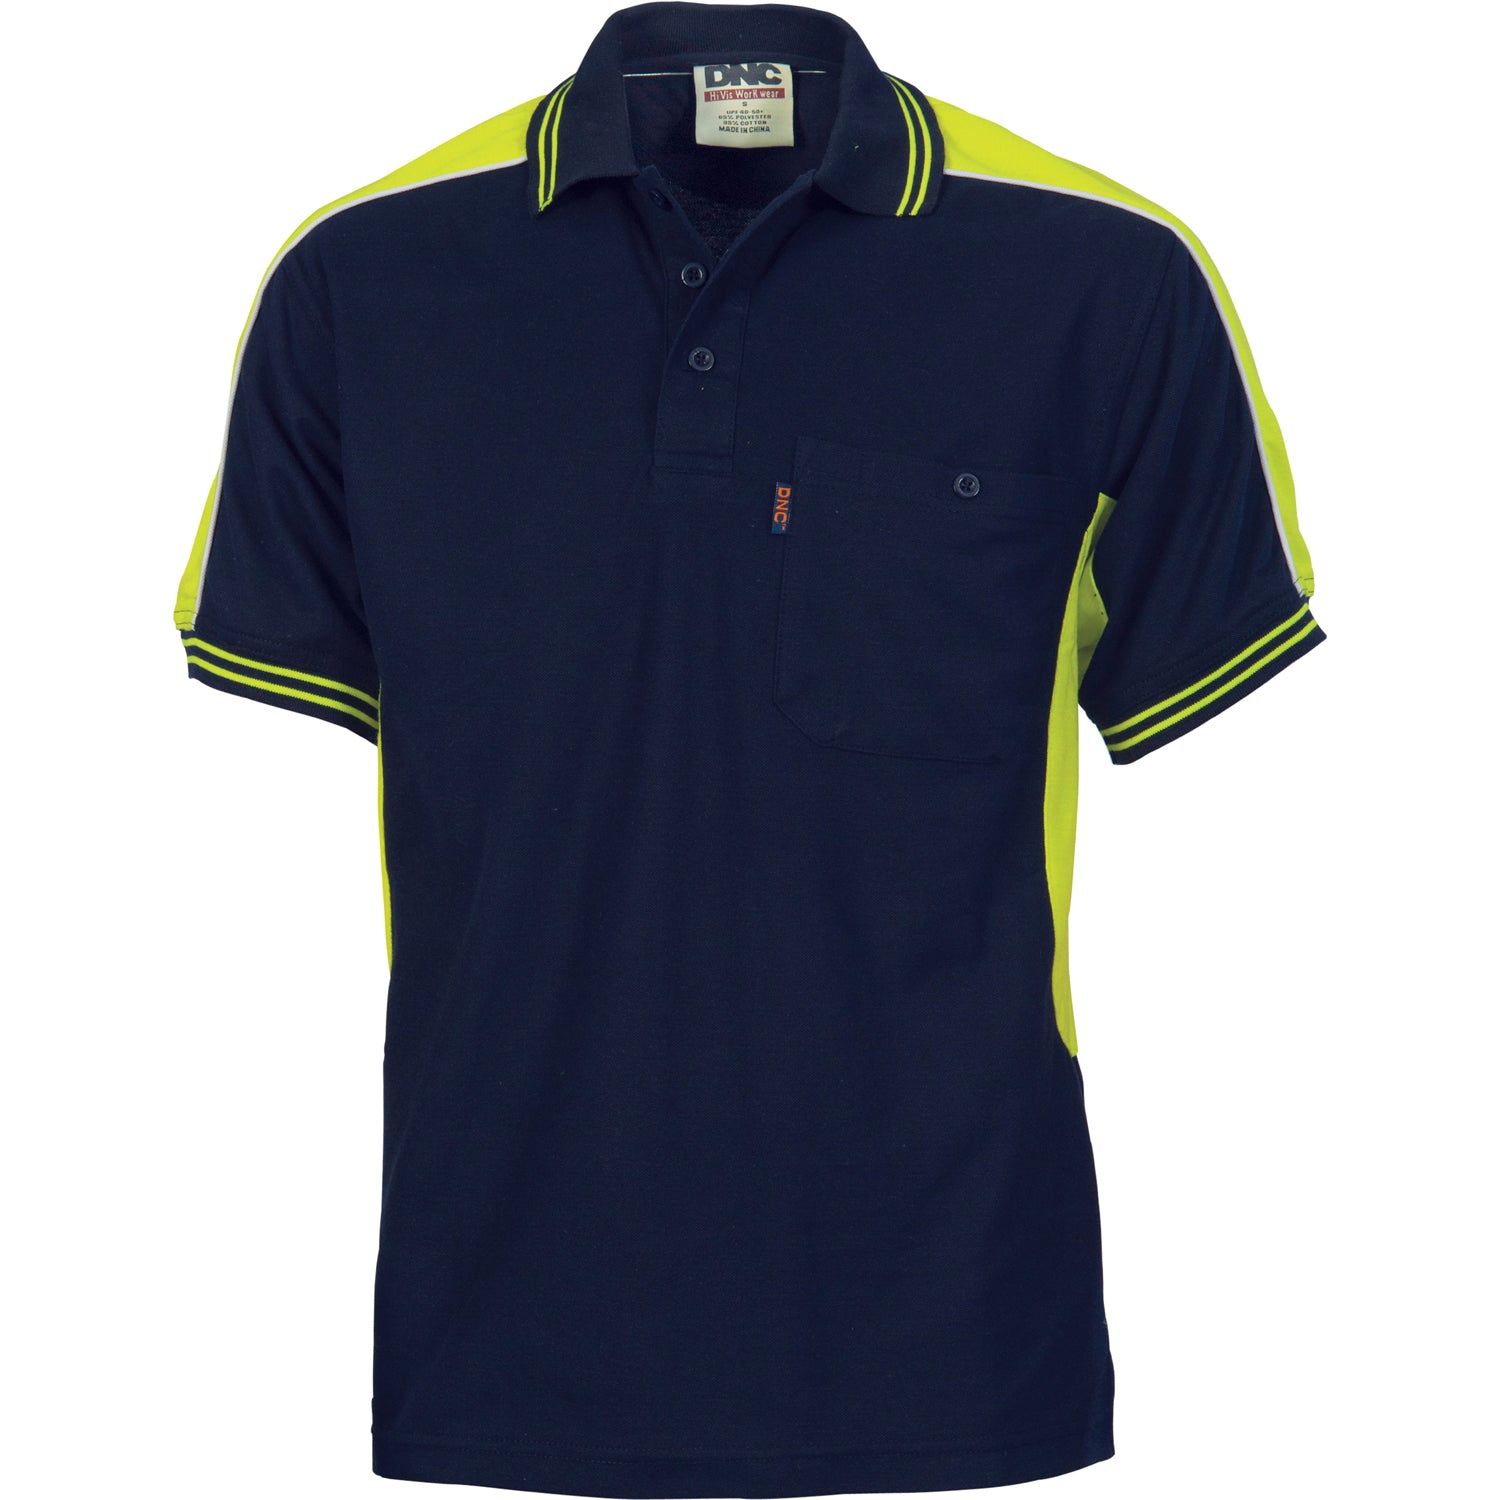 DNC Polyester Cotton Panel Polo Shirt - Short Sleeve -(5214)